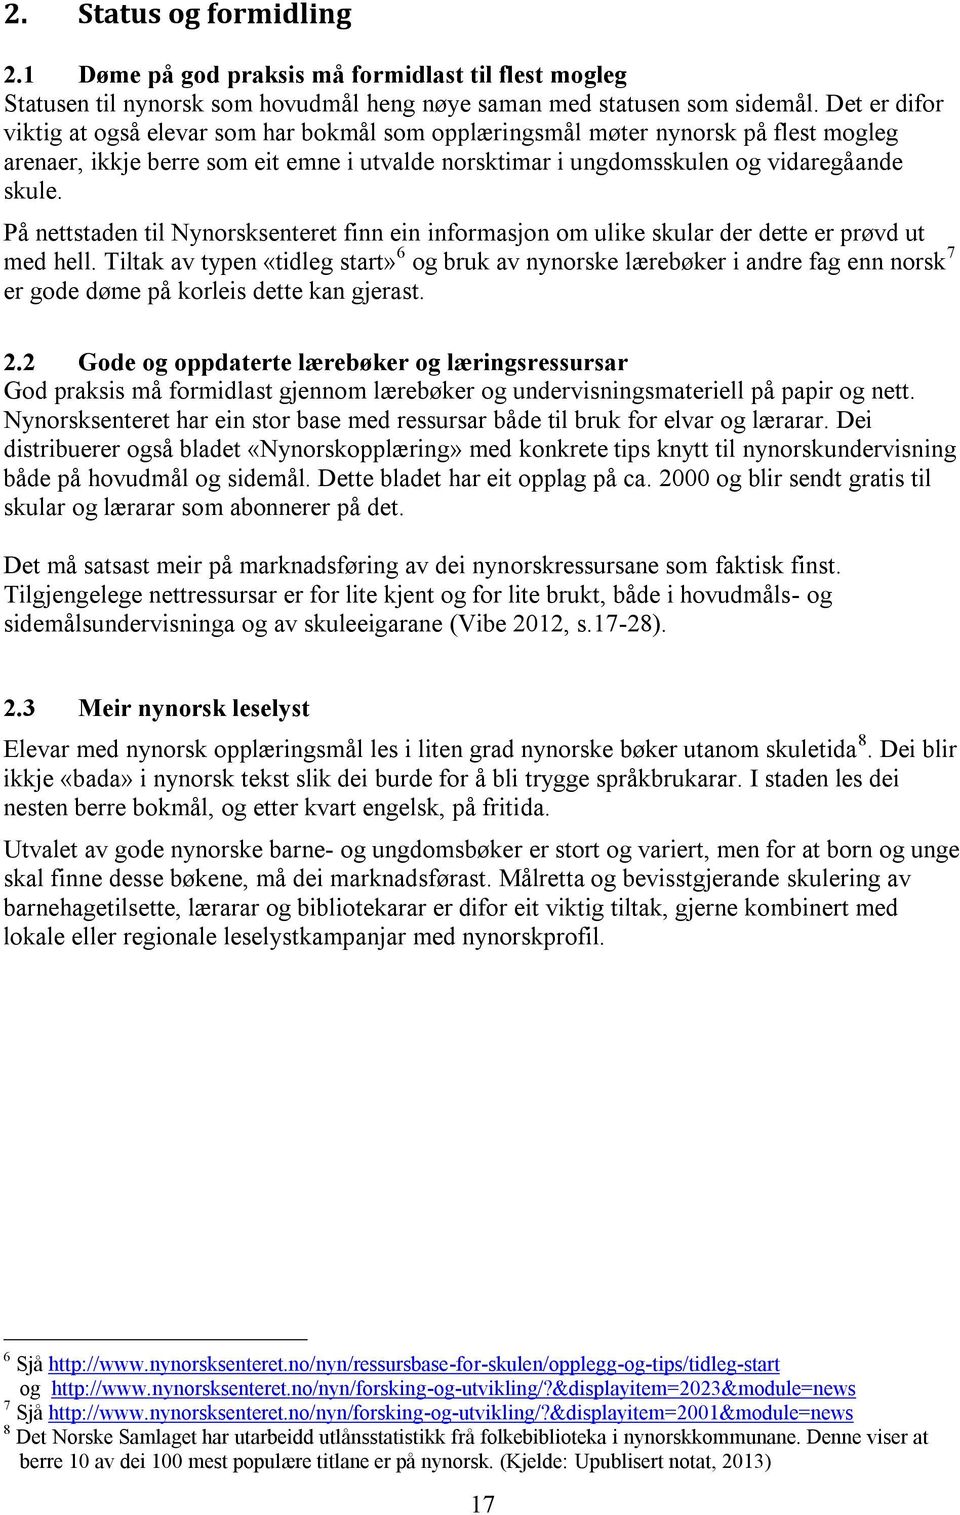 På nettstaden til Nynorsksenteret finn ein informasjon om ulike skular der dette er prøvd ut med hell.